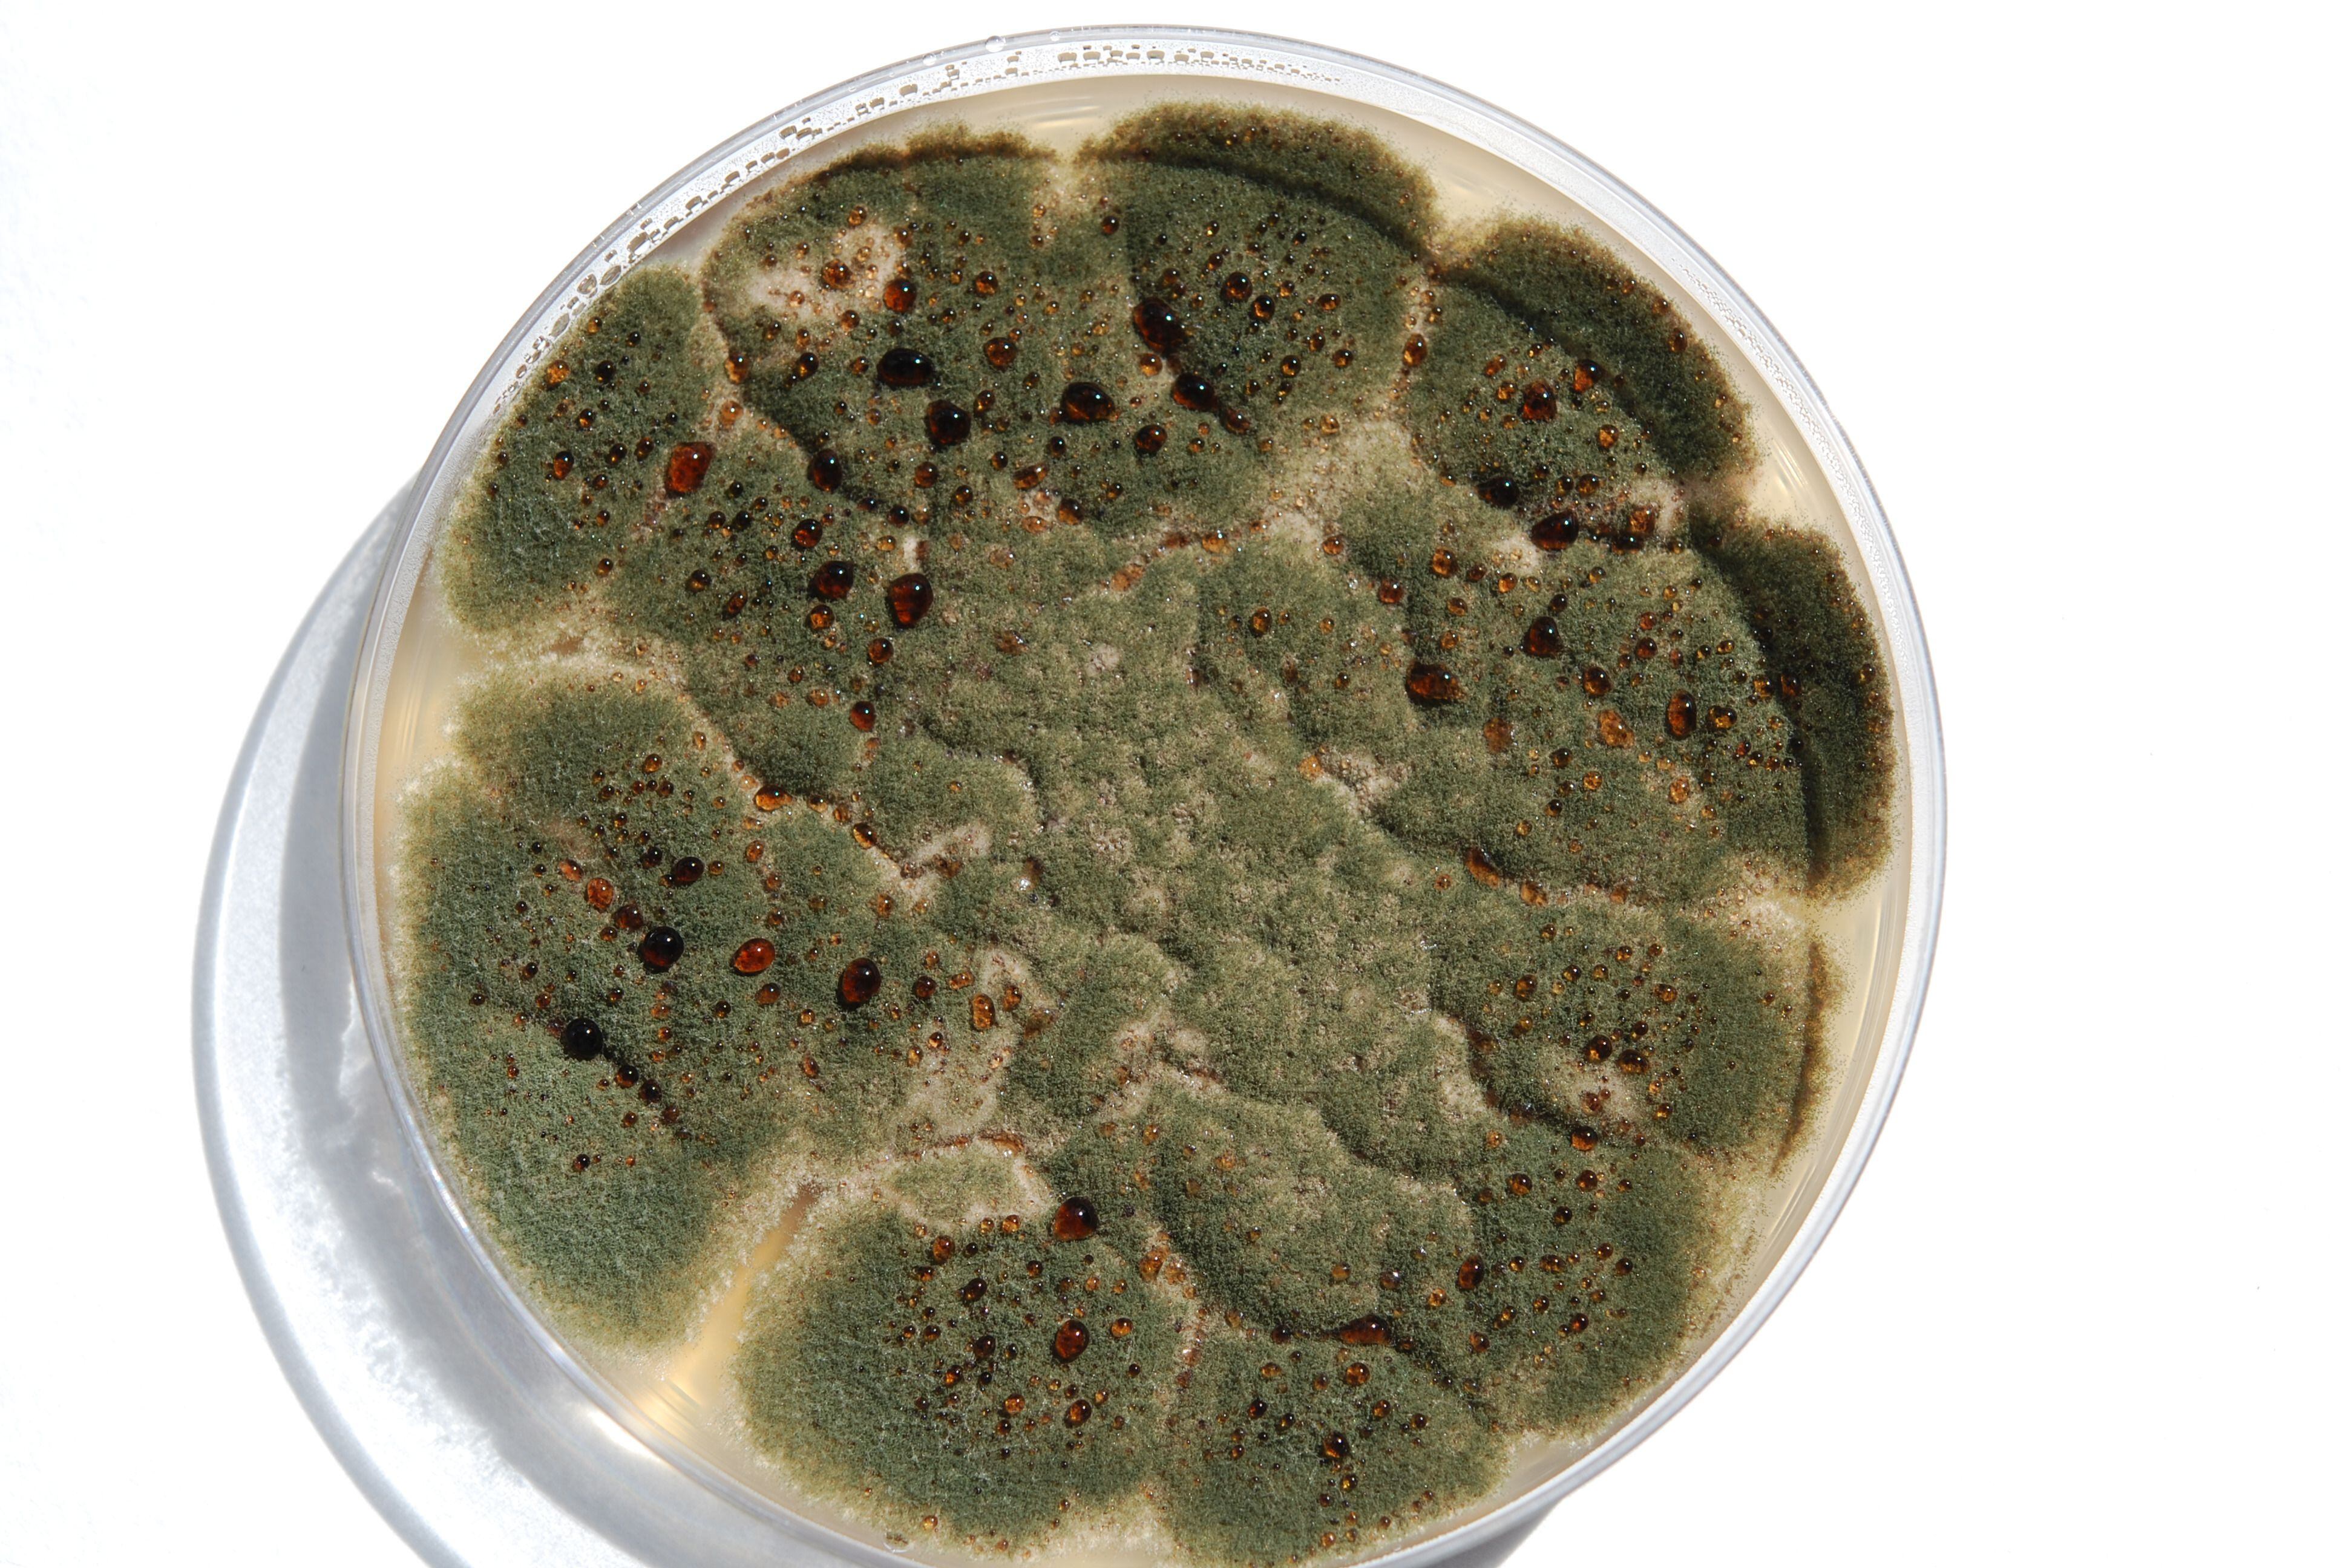 Colonia de 'Aspergillus', hongo causante de la aspergilosis -reacciones alérgicas e infecciones en los pulmones y otros órganos- creciendo en Agar extracto de Malta, que se usa para el cultivo de hongos.